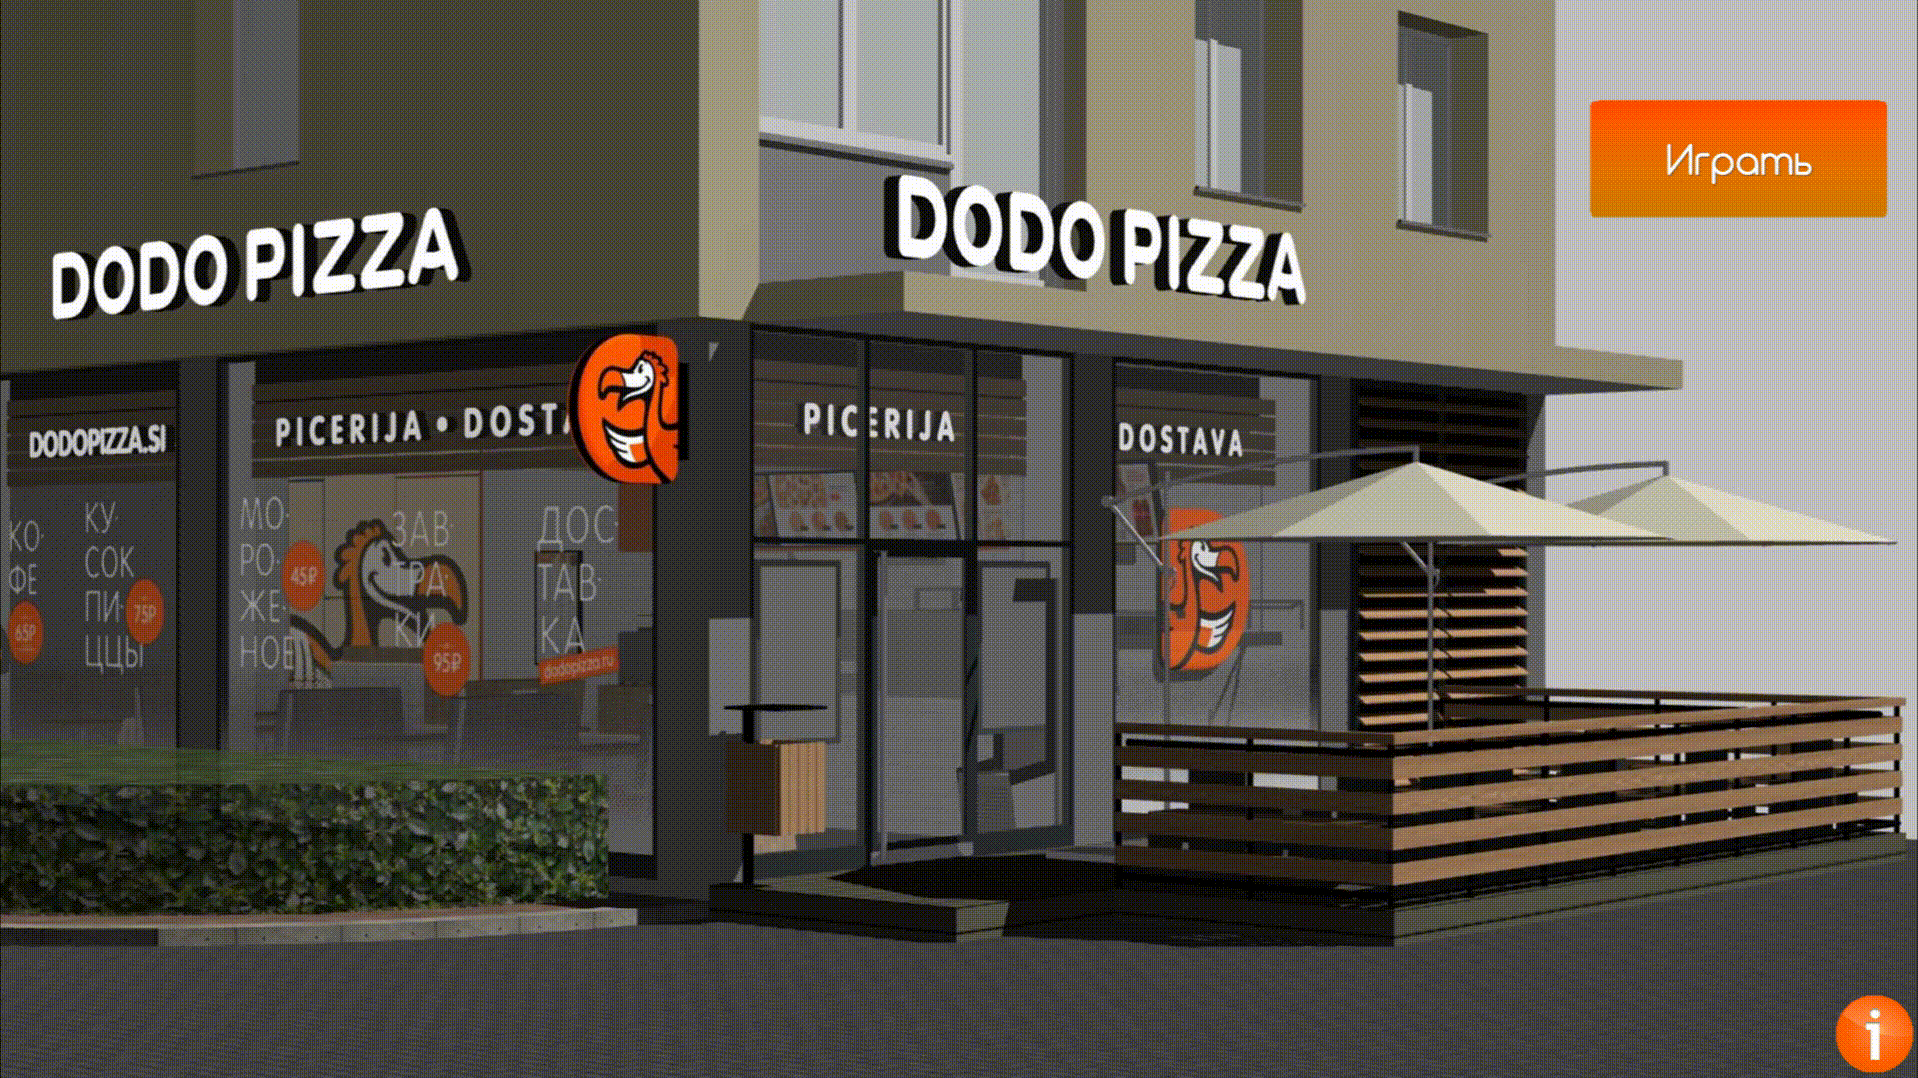 Пример брендирования Dodo pizza